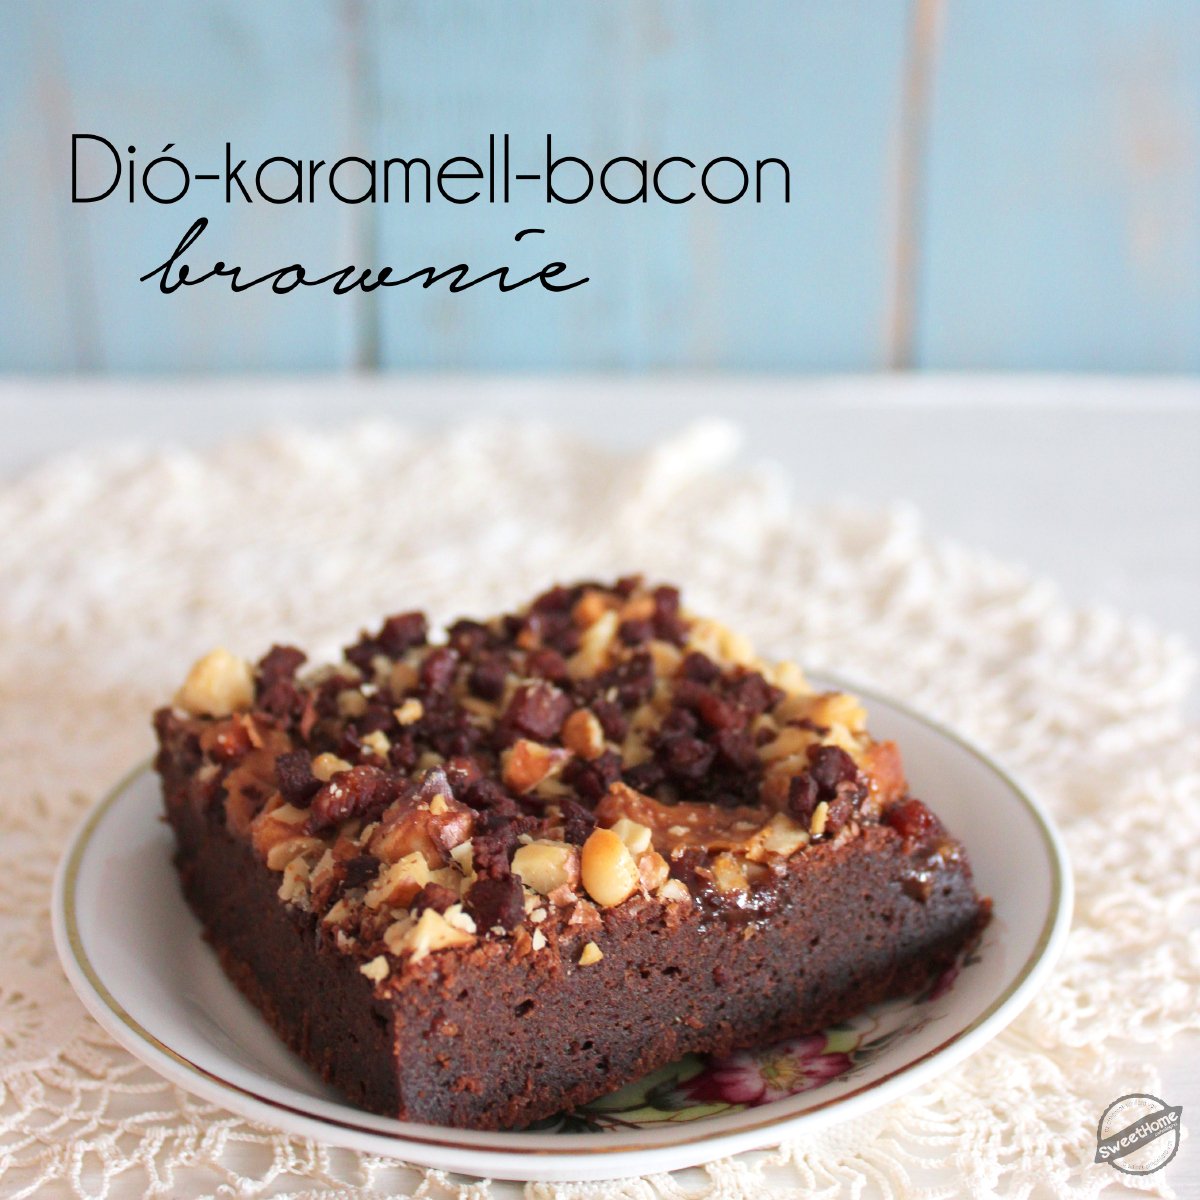 Baconnel vagy bacon nélkül - ez a brownie mindenhogy jó!